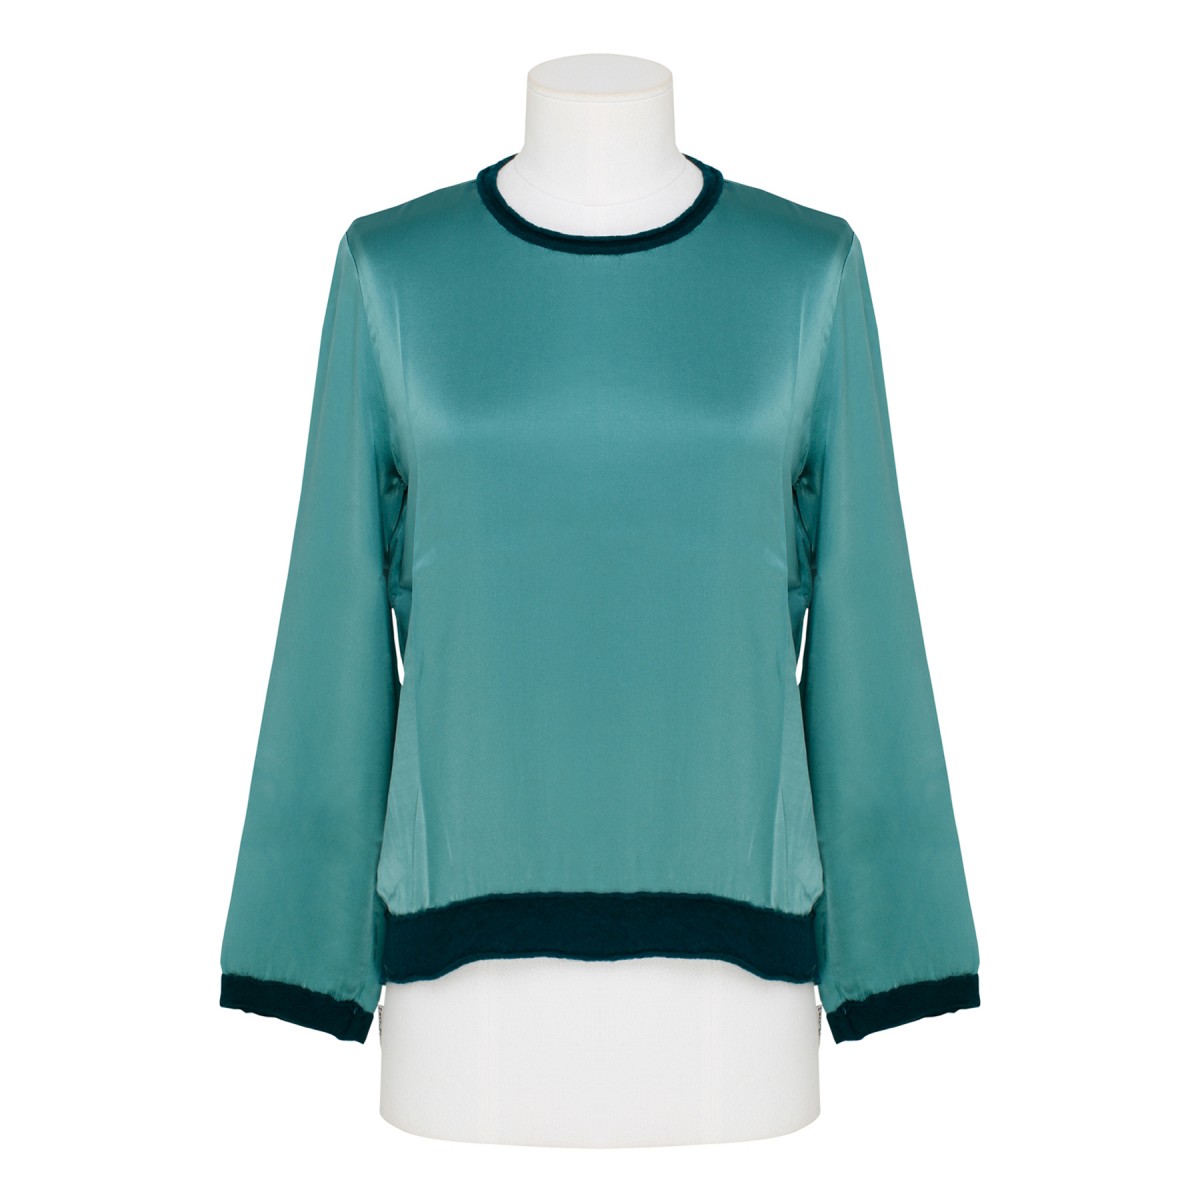 Emerald Green silk Sweater with wool...